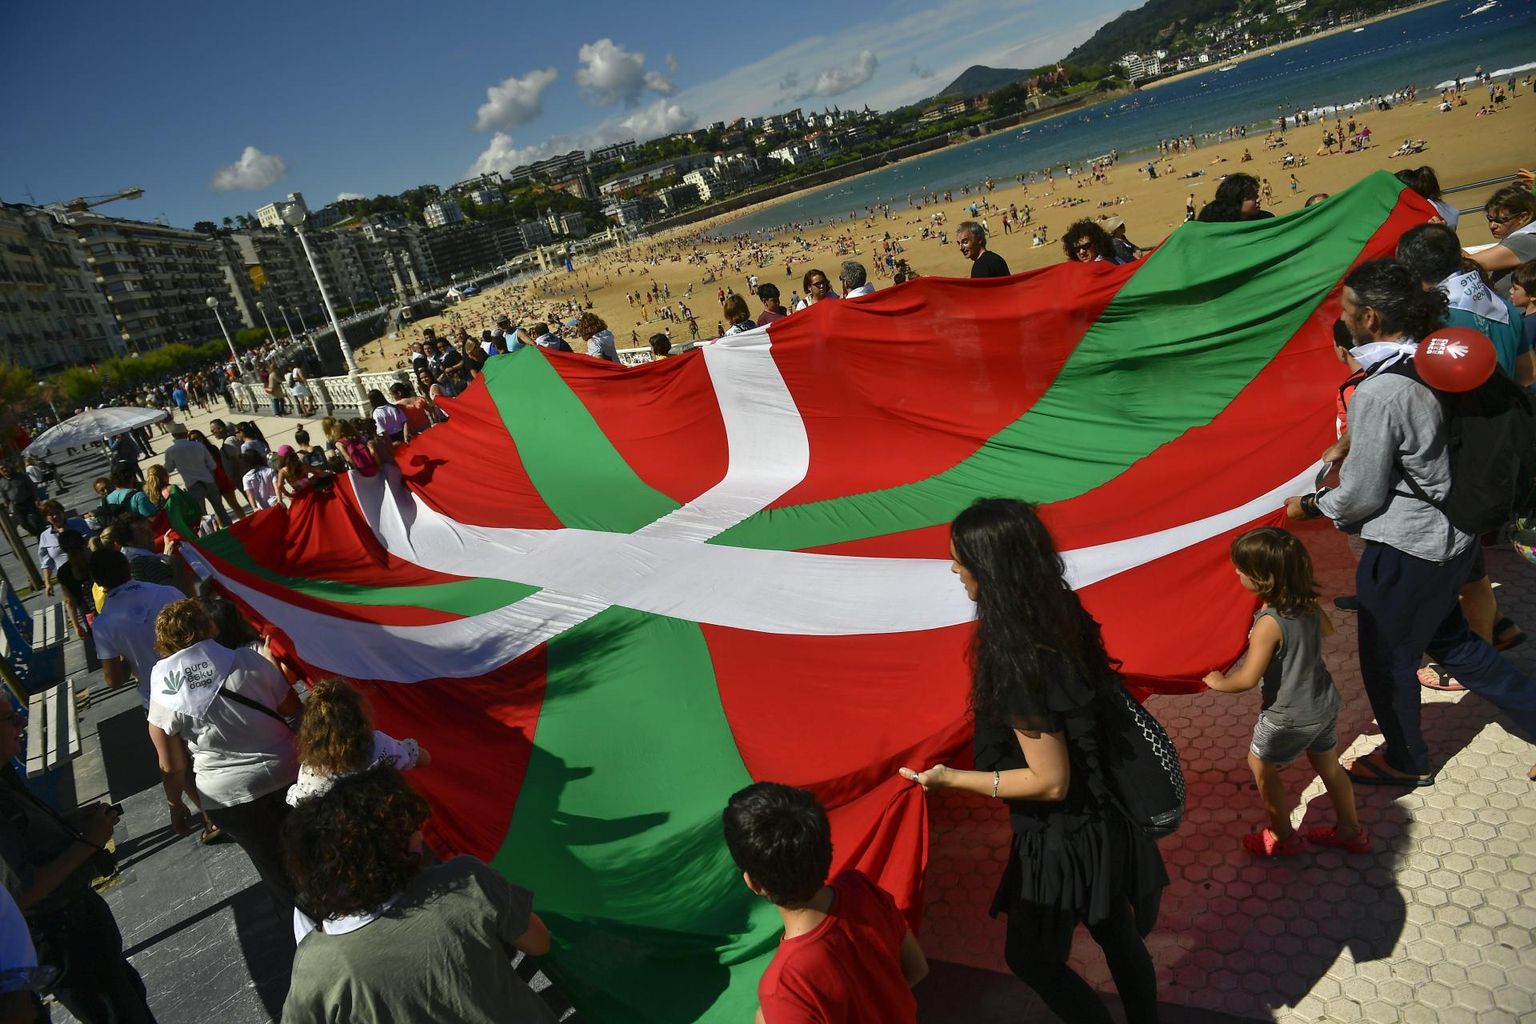 Igatsus iseseisvuse järele pole Baski autonoomses piirkonnas kuhugi kadunud. Tunamullu suvel moodustasid tuhanded meeleavaldajad Hispaania põhjaprovintsis sõltumatust nõudes inimketi. Pildil rahvas suure Baskimaa lipuga San Sebastiani ehk baski keeles Donostia rannal. FOTO: Alvaro Barrientos/AP/Scanpix